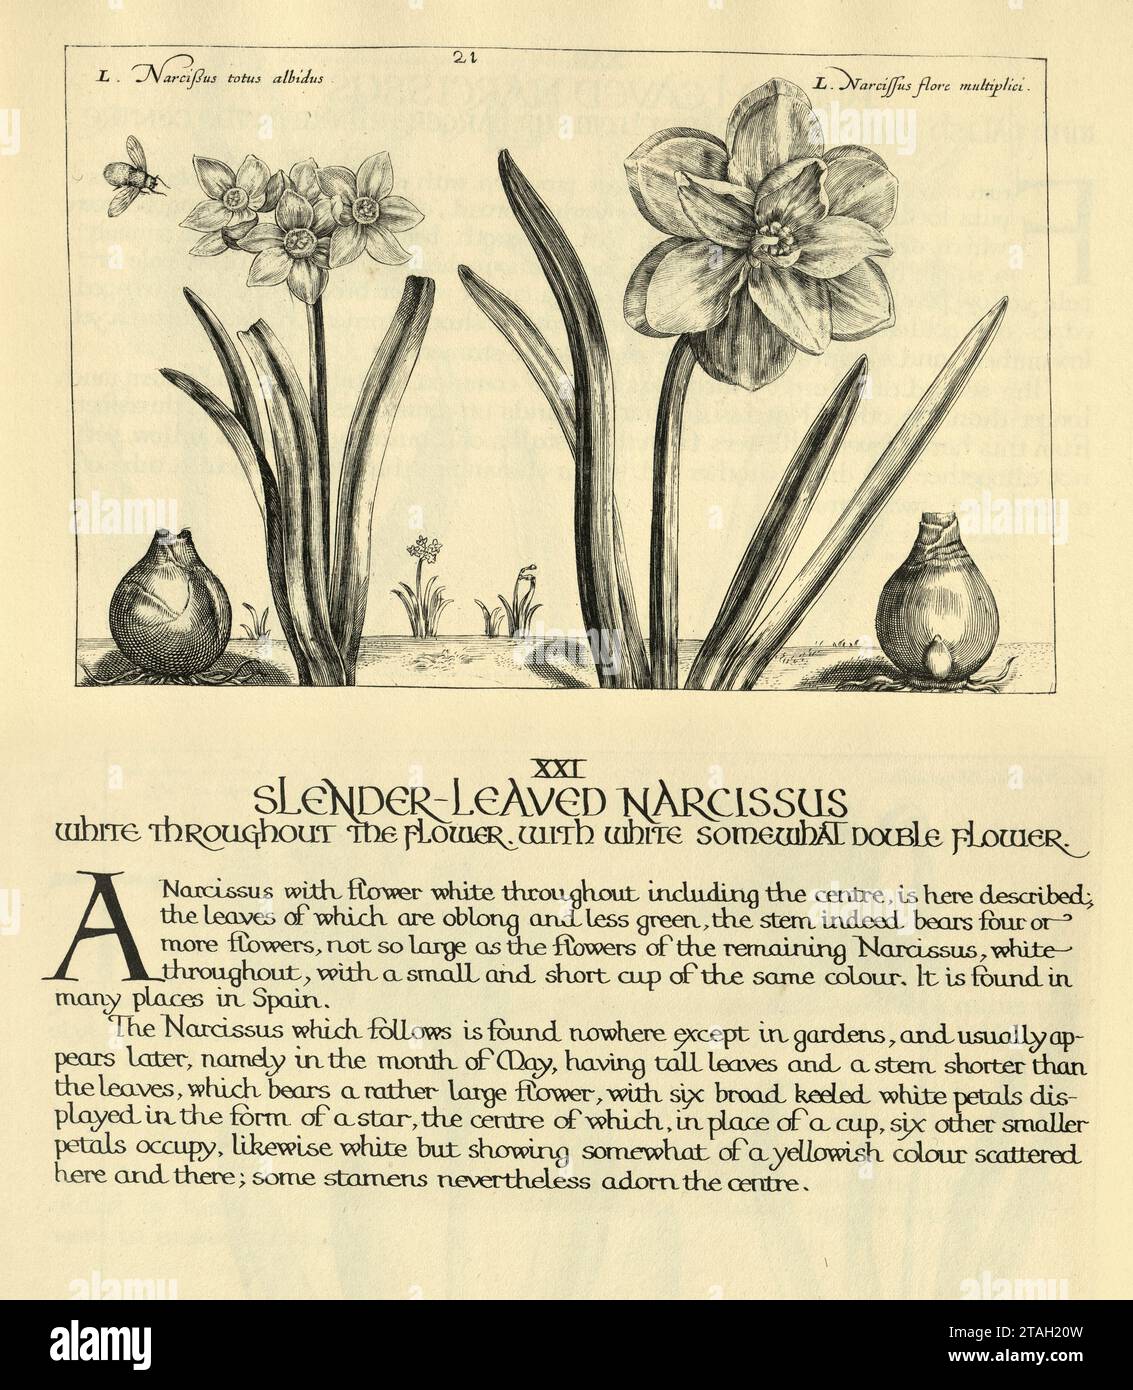 Estampe d'art botanique de Narcisse à feuilles minces, jonquille, d'Hortus Floridus par Crispin de passe, illustration vintage, 17e siècle Banque D'Images